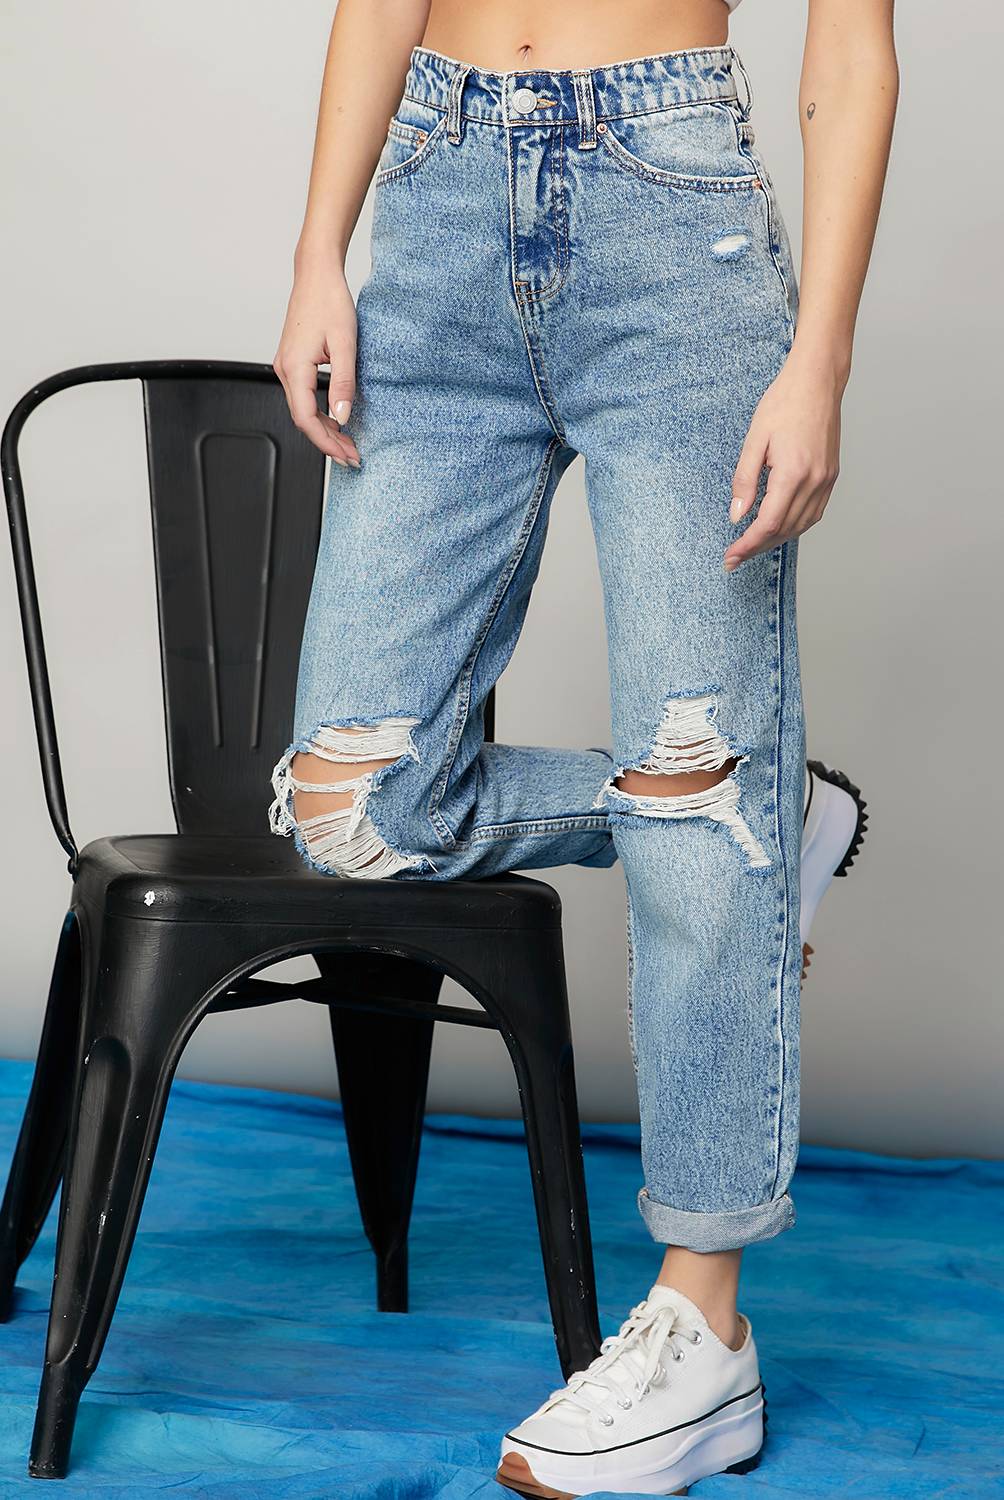 Americanino Jeans Mujer, falabella.com